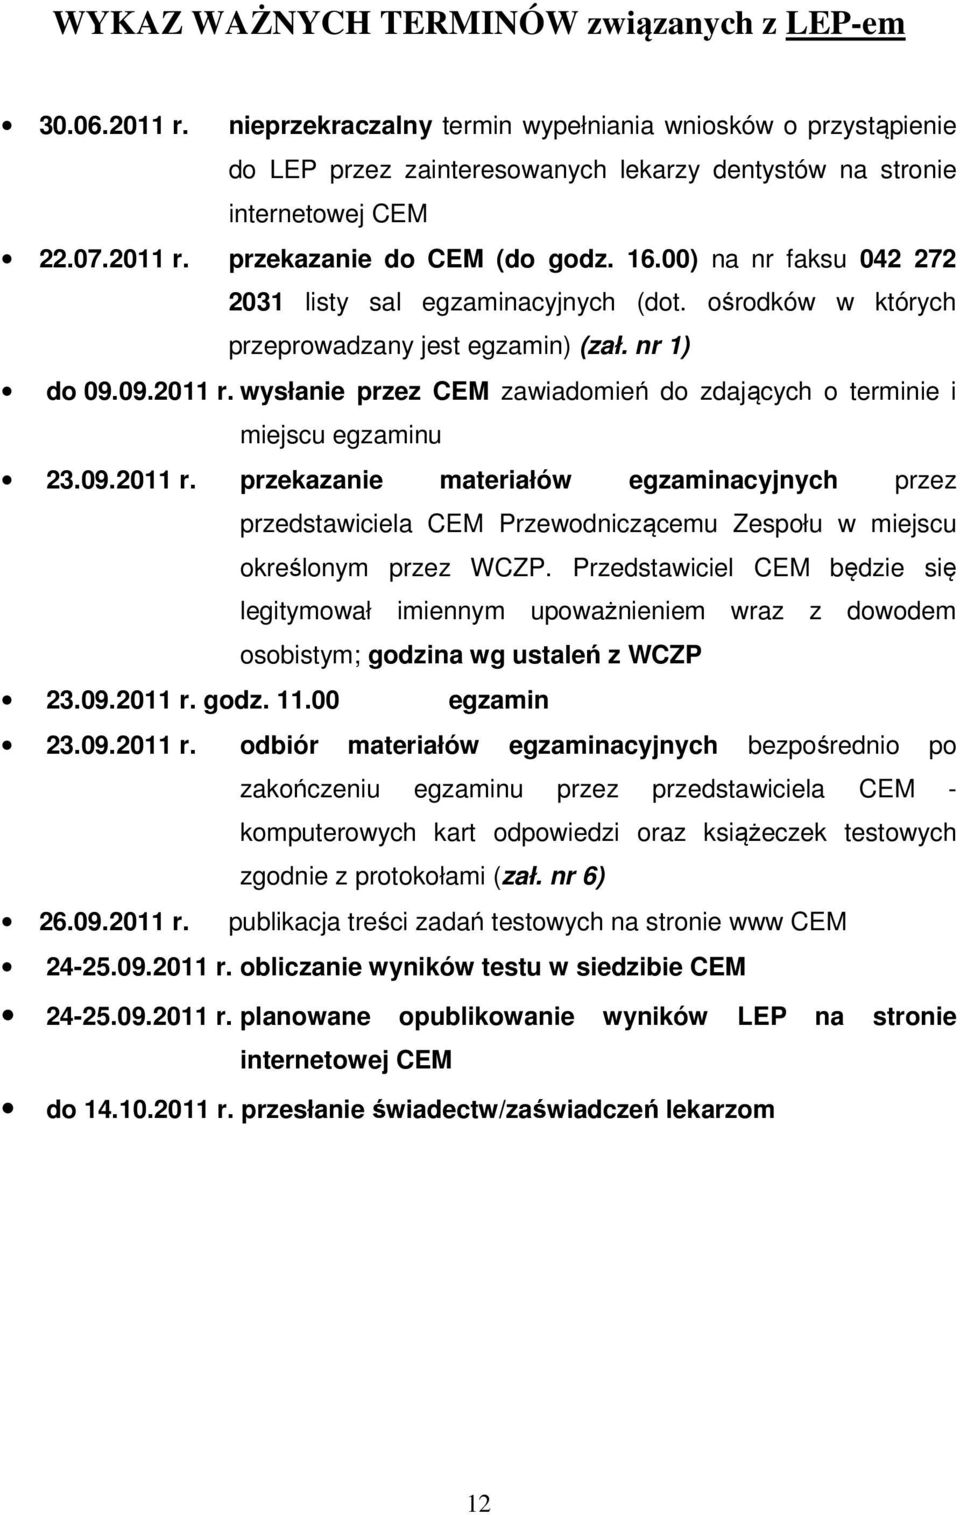 09.2011 r. przekazanie materiałów egzaminacyjnych przez przedstawiciela CEM Przewodniczącemu Zespołu w miejscu określonym przez WCZP.